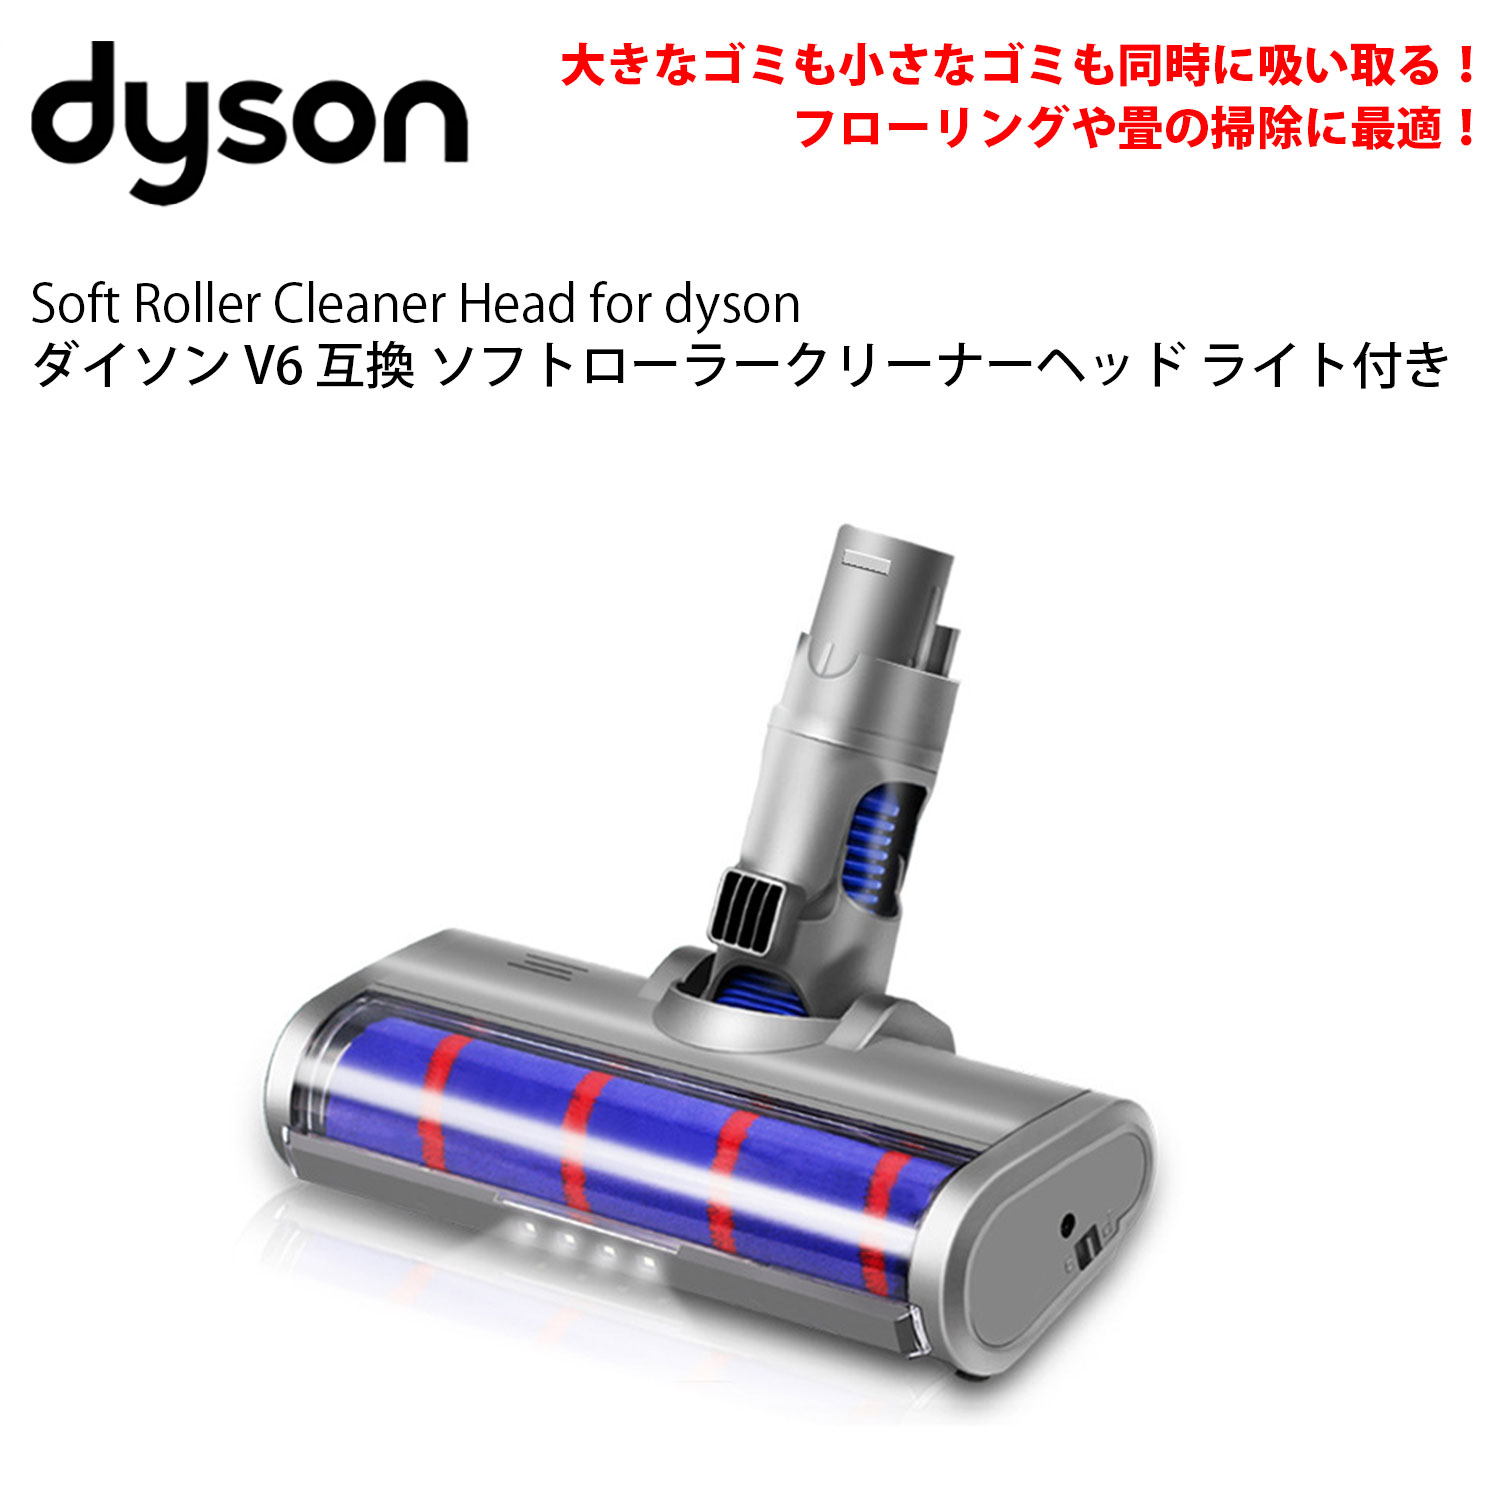 ダイソン 掃除機 LED ソフトローラークリーナーヘッド v6 dc61 dc62 dc74 互換 dyson 照明 ライト